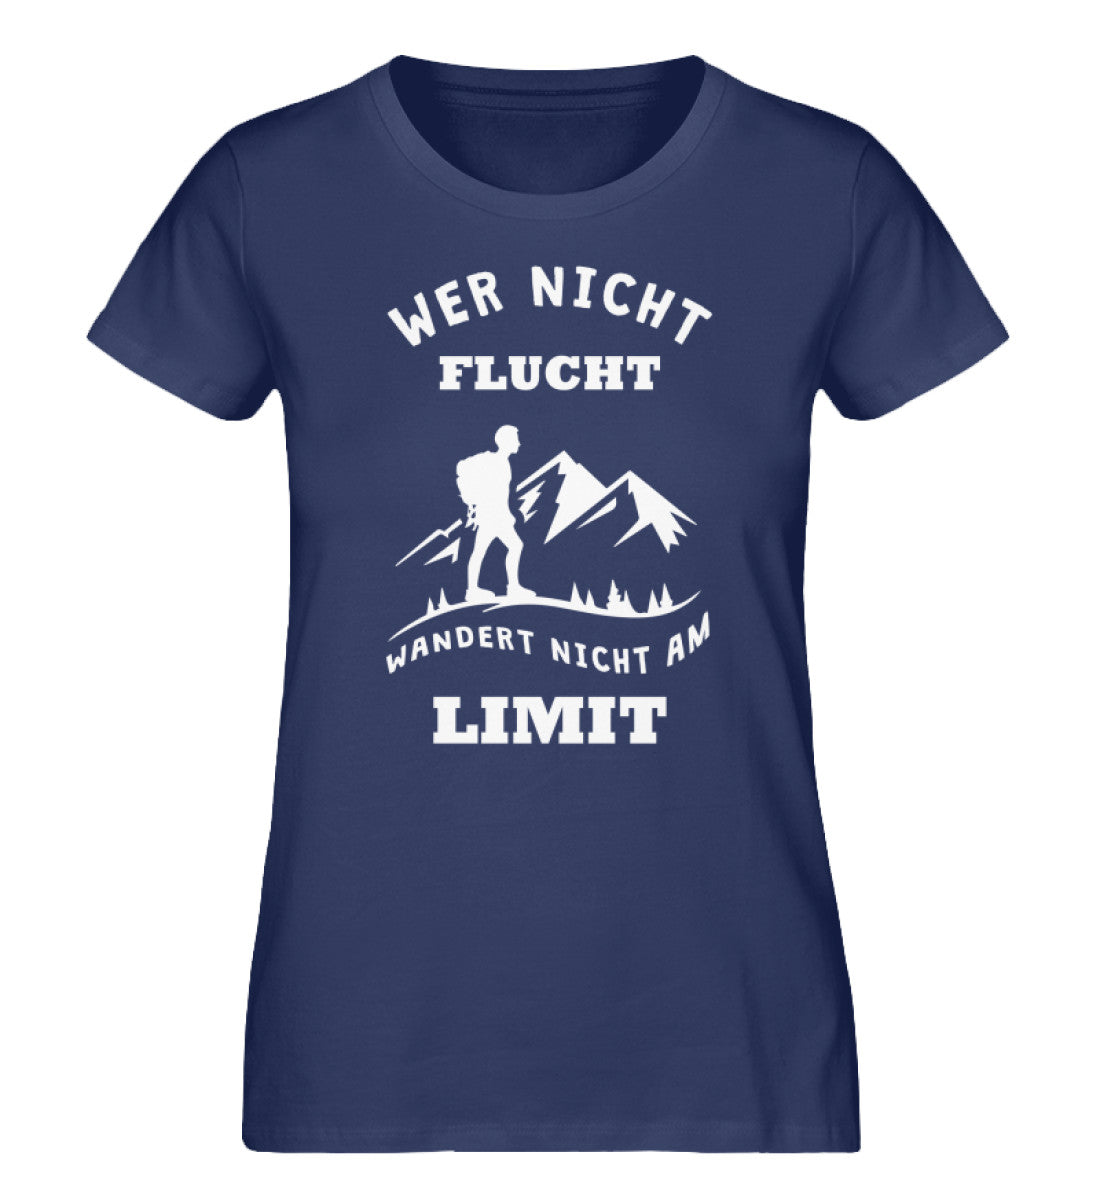 Wer nicht flucht wandert nicht am Limit - Damen Organic T-Shirt berge Navyblau